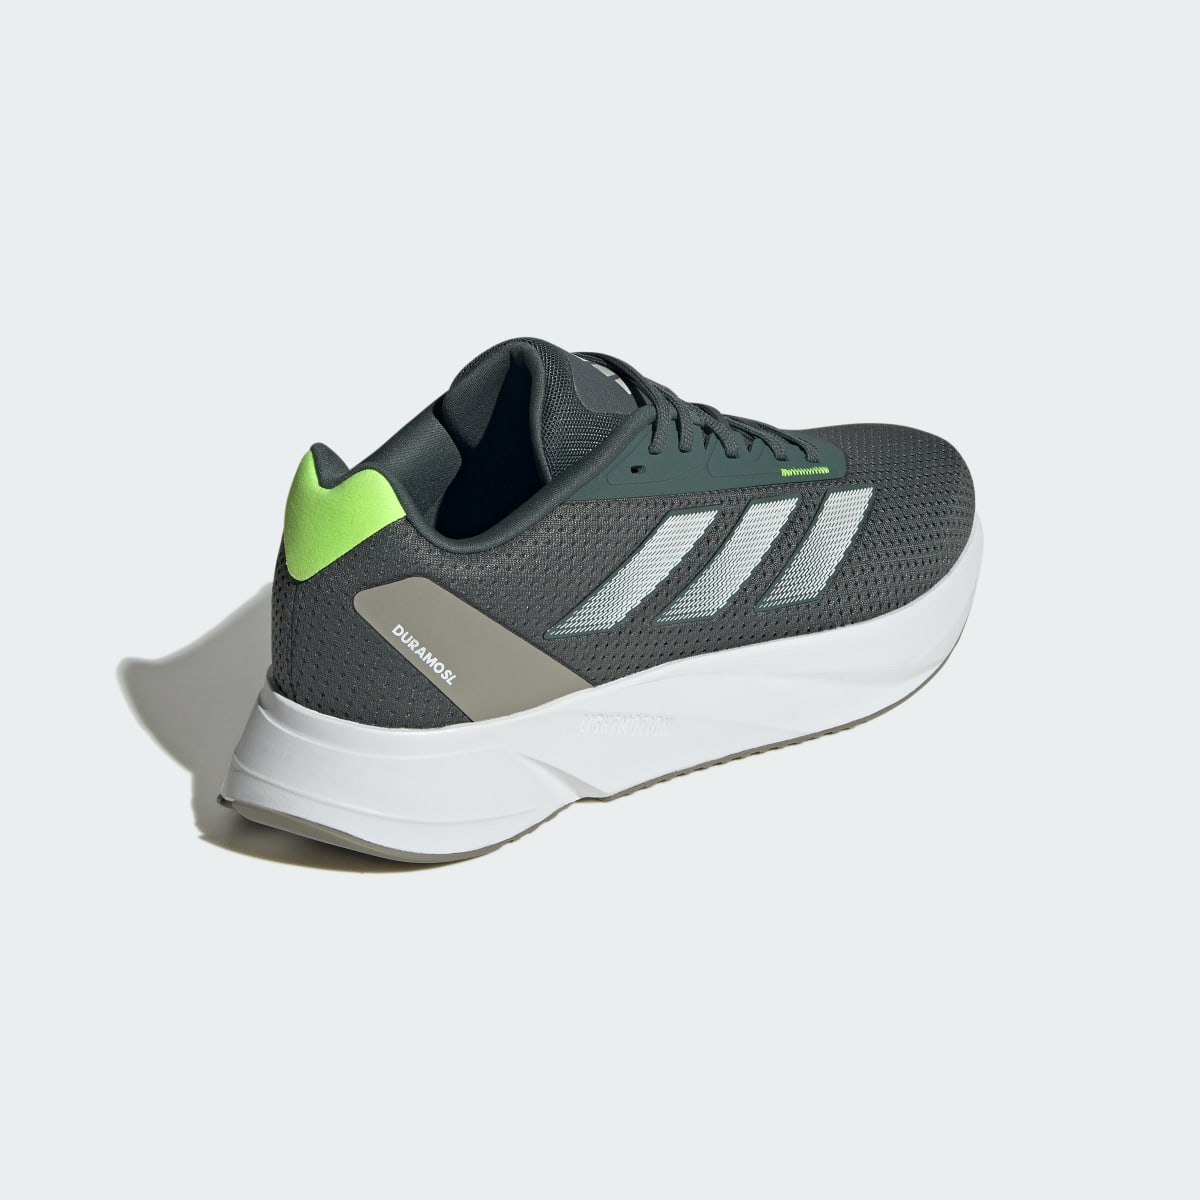 Adidas Duramo SL Running Shoes. 6